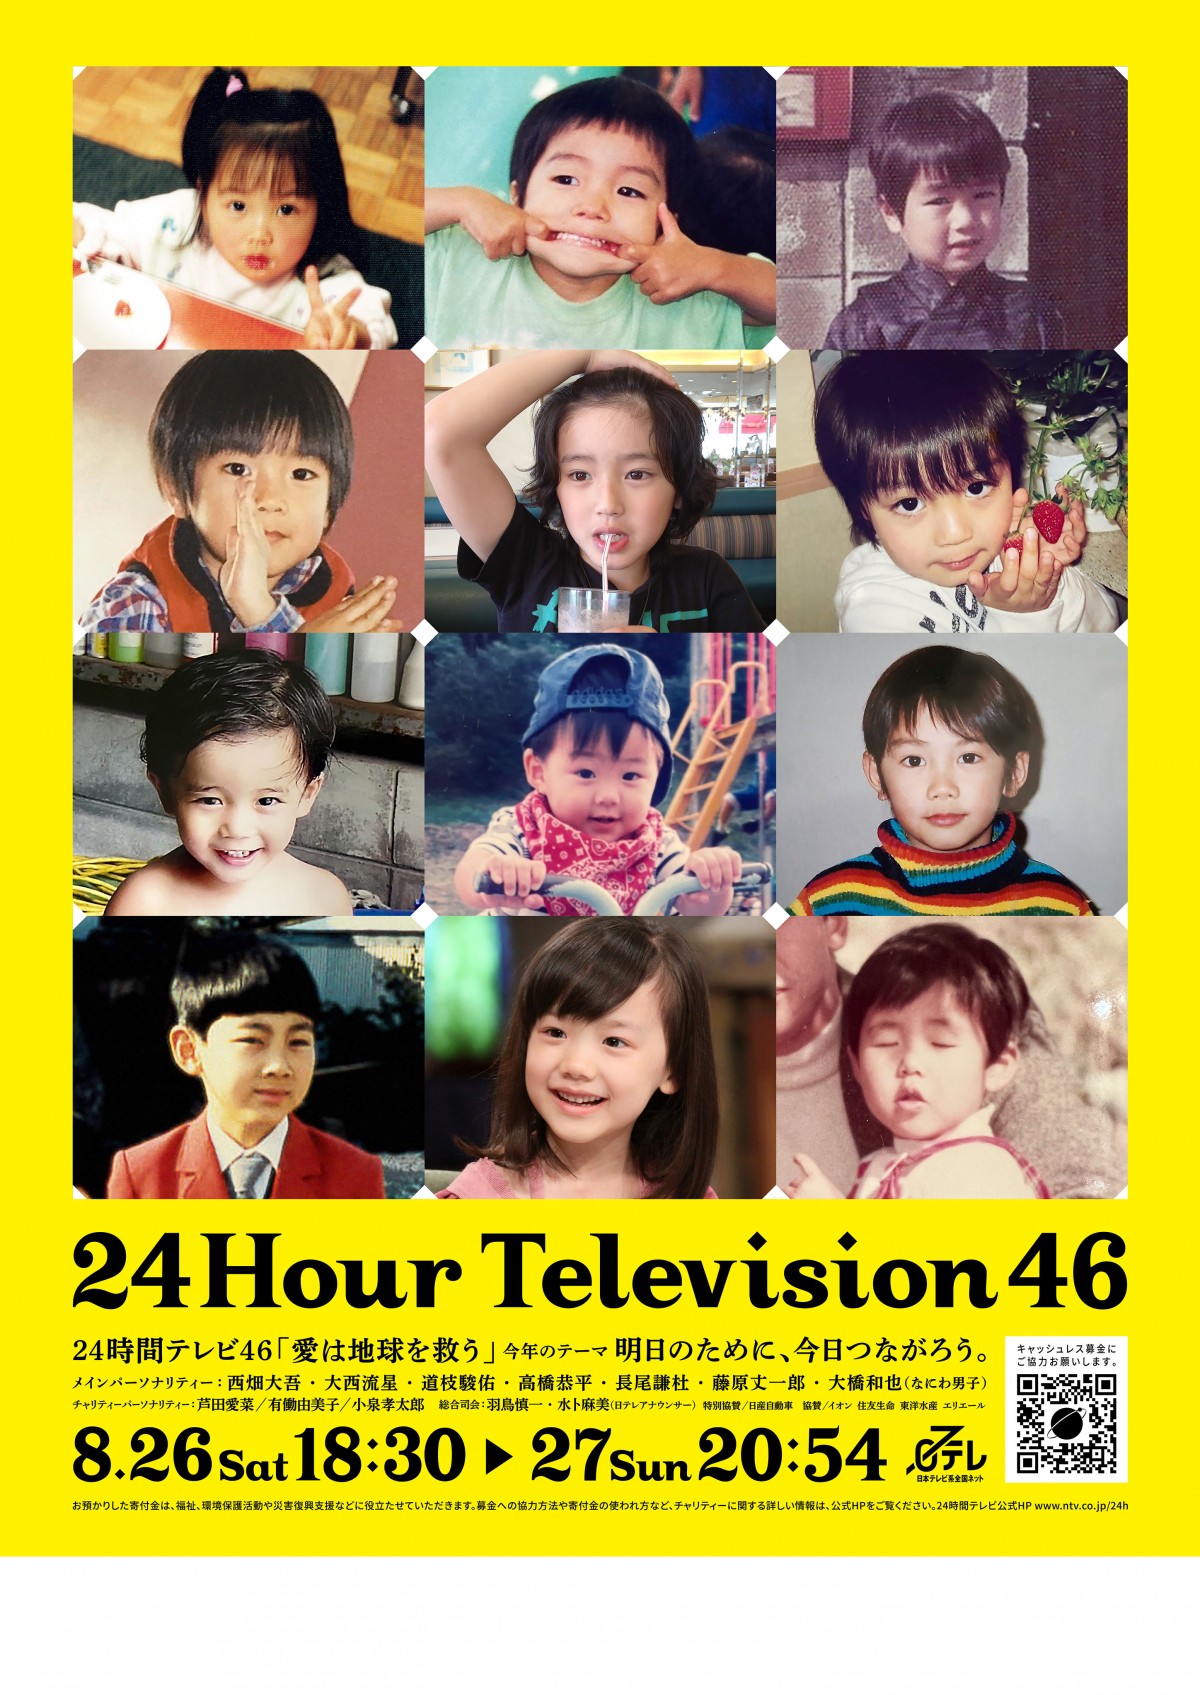 【日テレ】『24時間テレビ』初 なにわ男子、芦田愛菜ら出演者の「子ども時代」の写真でデザインしたポスタービジュアルが解禁